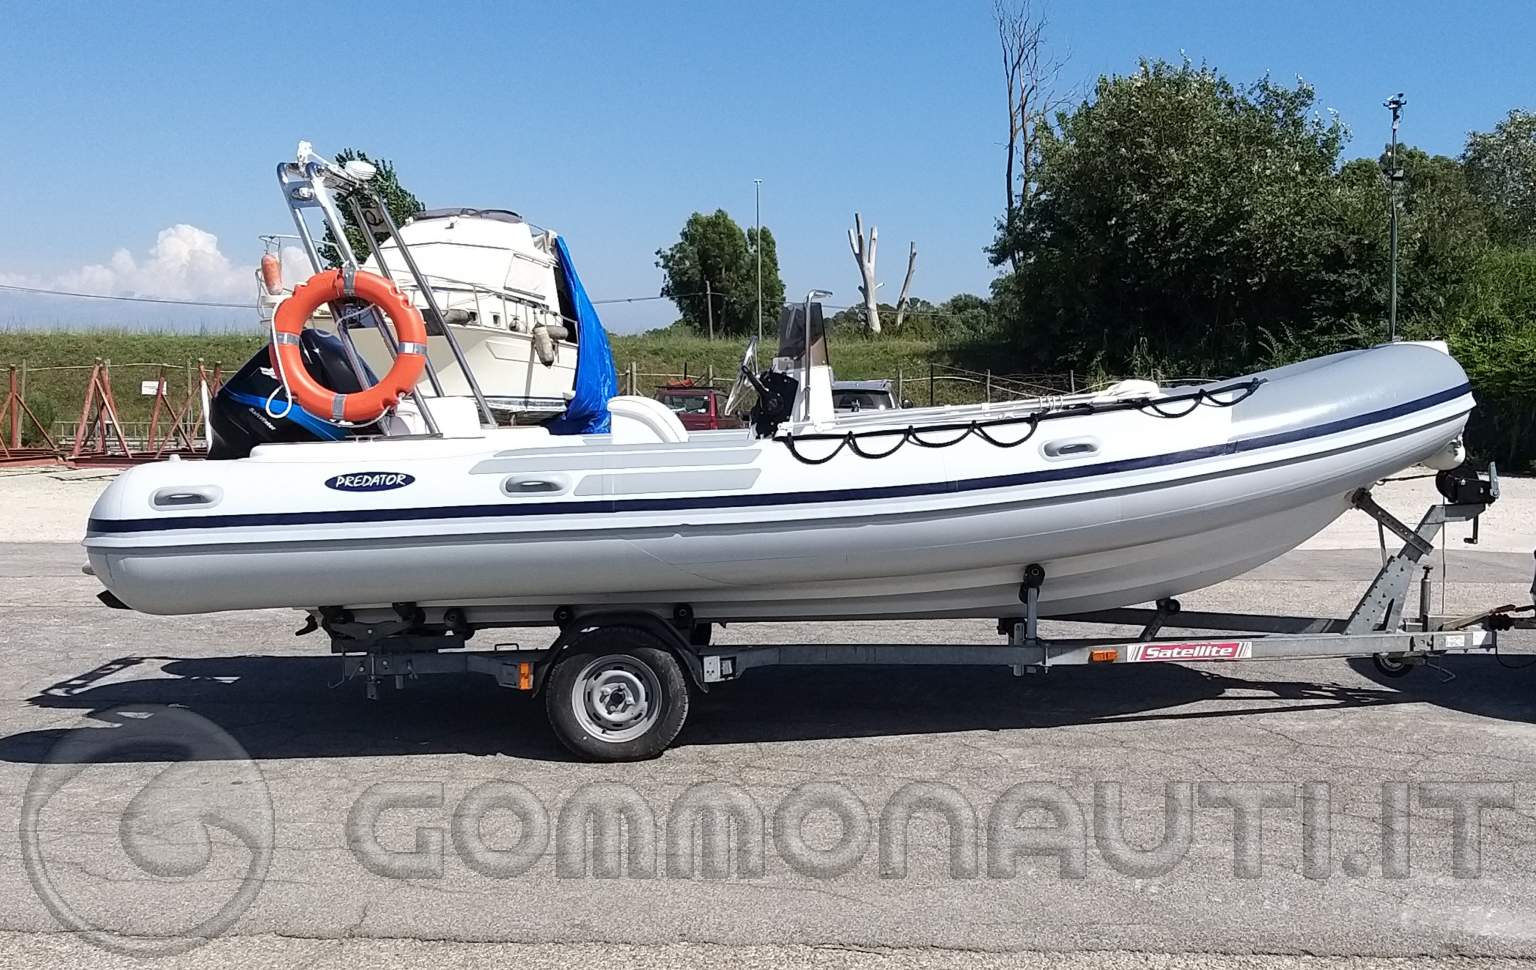 Gommone Italboats Predator 590 Mercury Optimax 115 HP 2 tempi